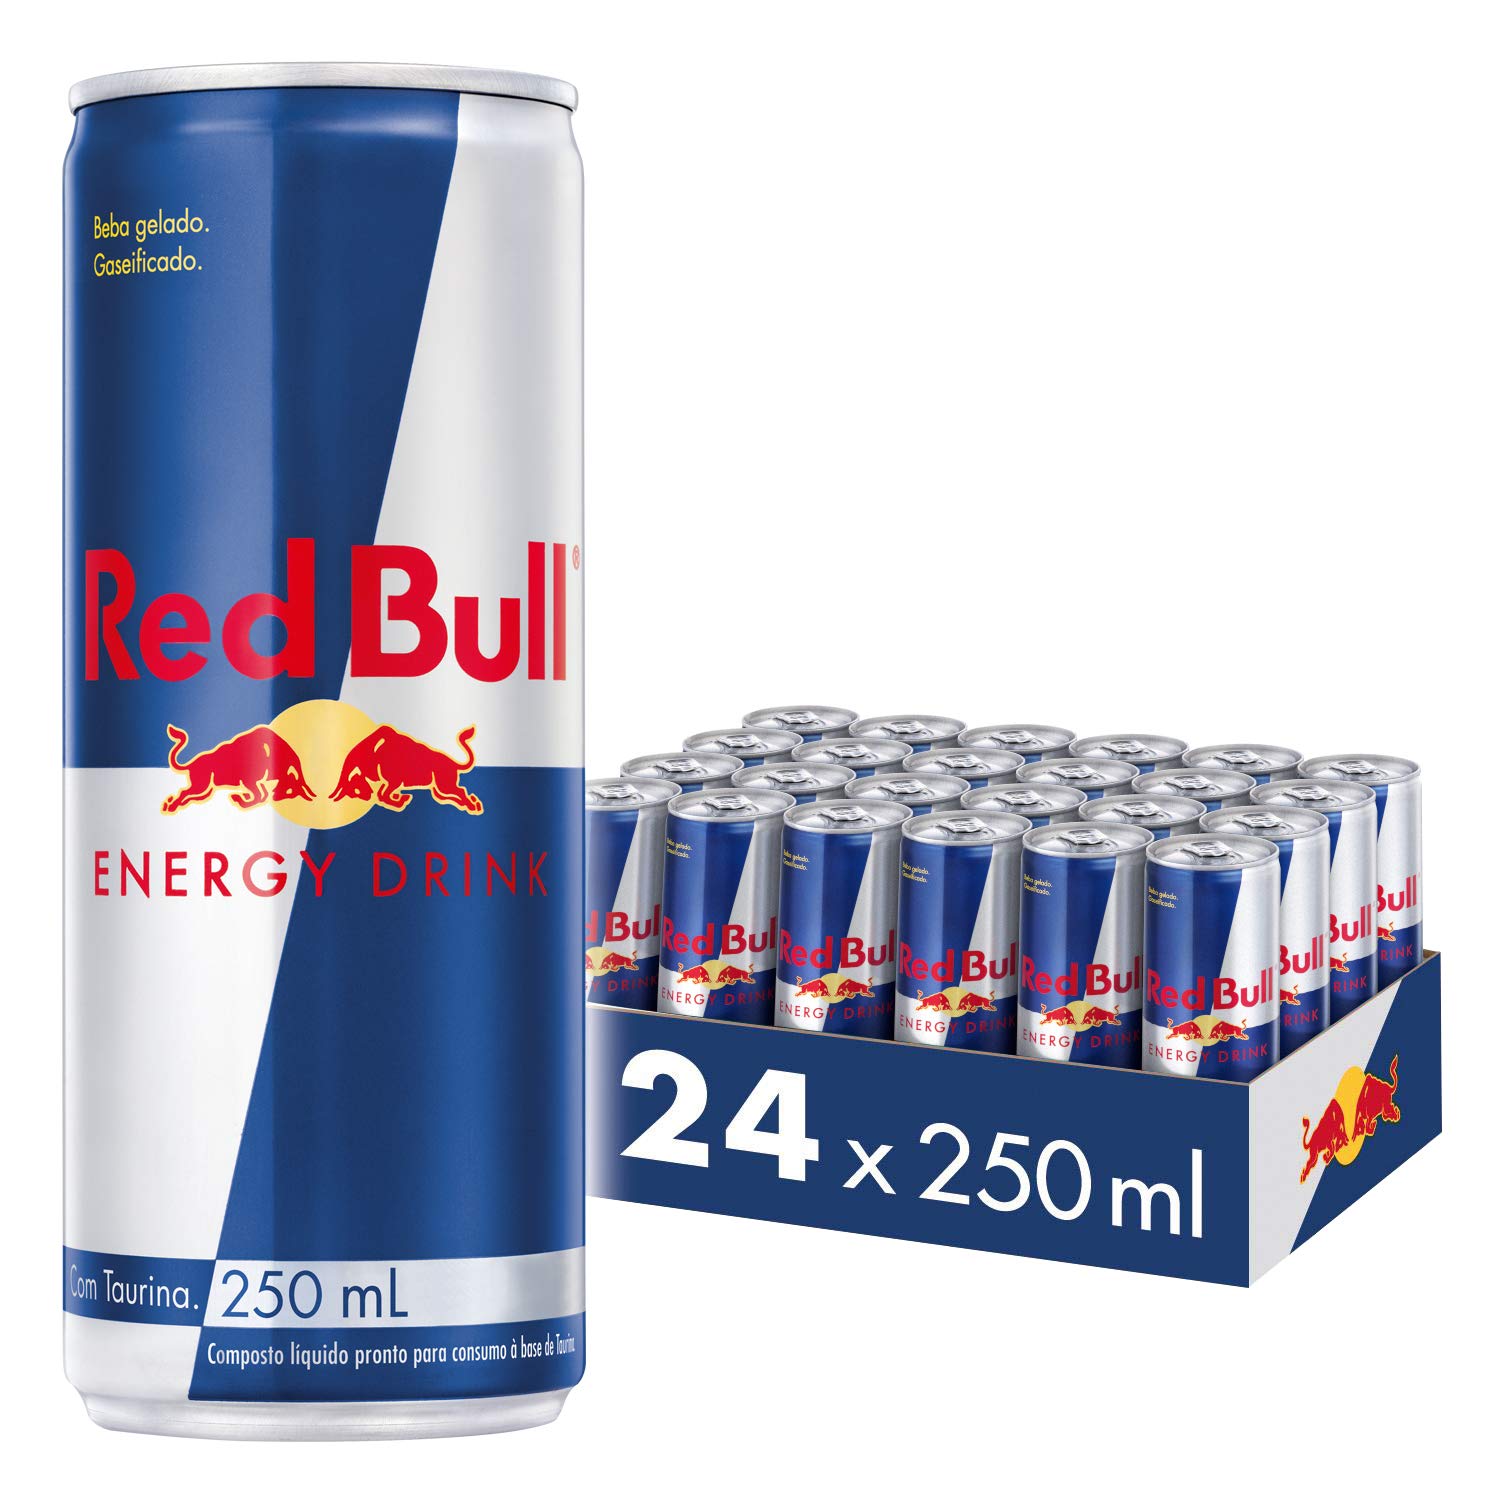 Red Bull Energy Drink - 250ml - Case of 24